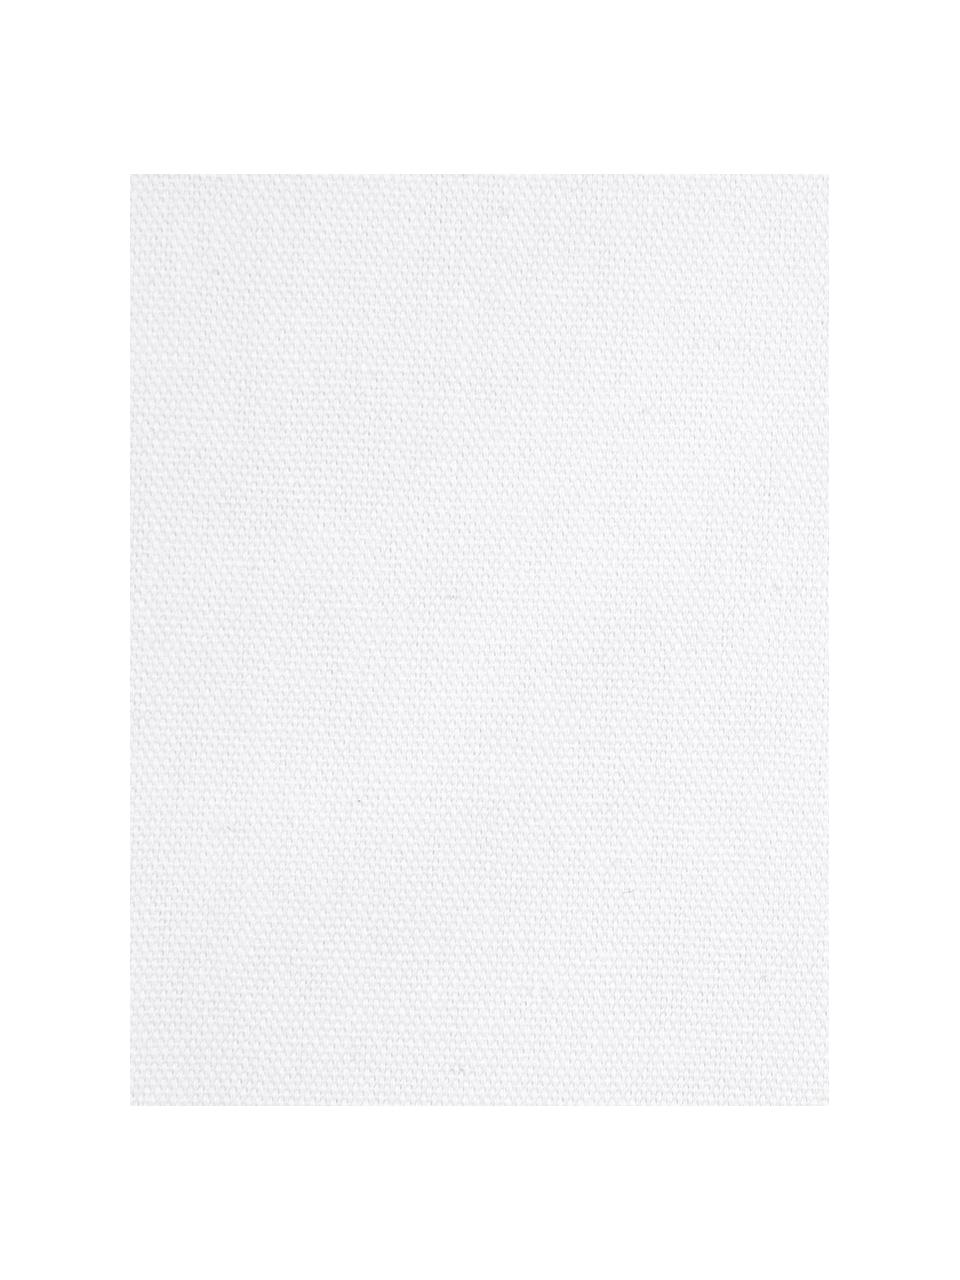 Kissenhülle Homard mit Print in Aquarelloptik, 100% Baumwolle, Rot, Weiß, 40 x 40 cm